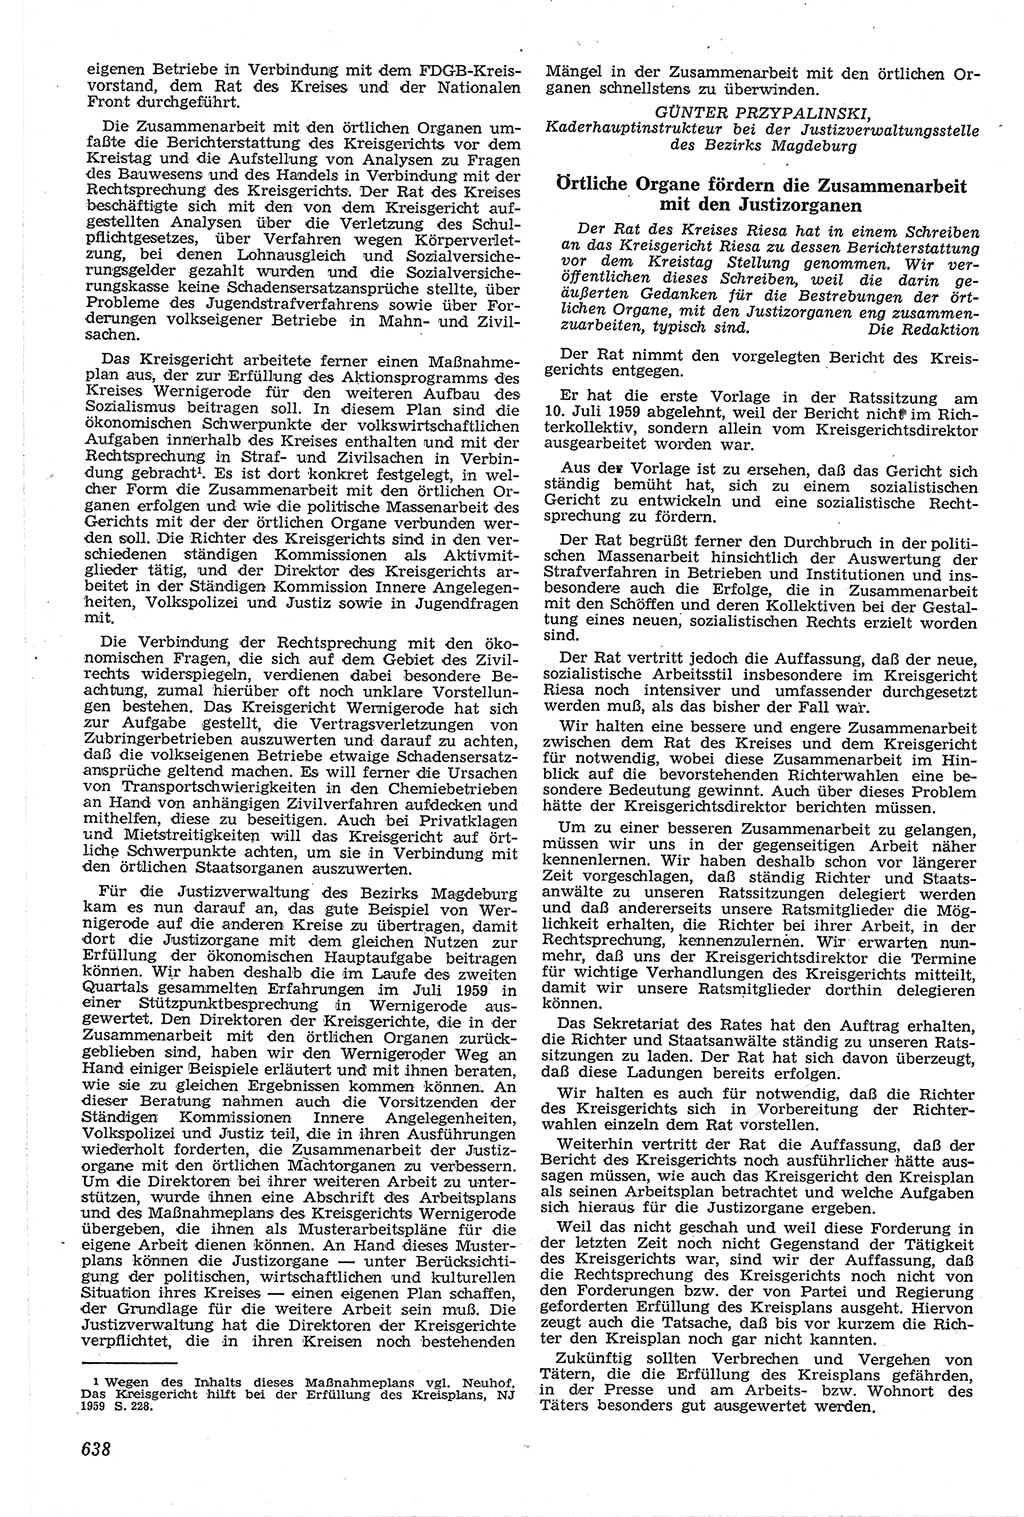 Neue Justiz (NJ), Zeitschrift für Recht und Rechtswissenschaft [Deutsche Demokratische Republik (DDR)], 13. Jahrgang 1959, Seite 638 (NJ DDR 1959, S. 638)